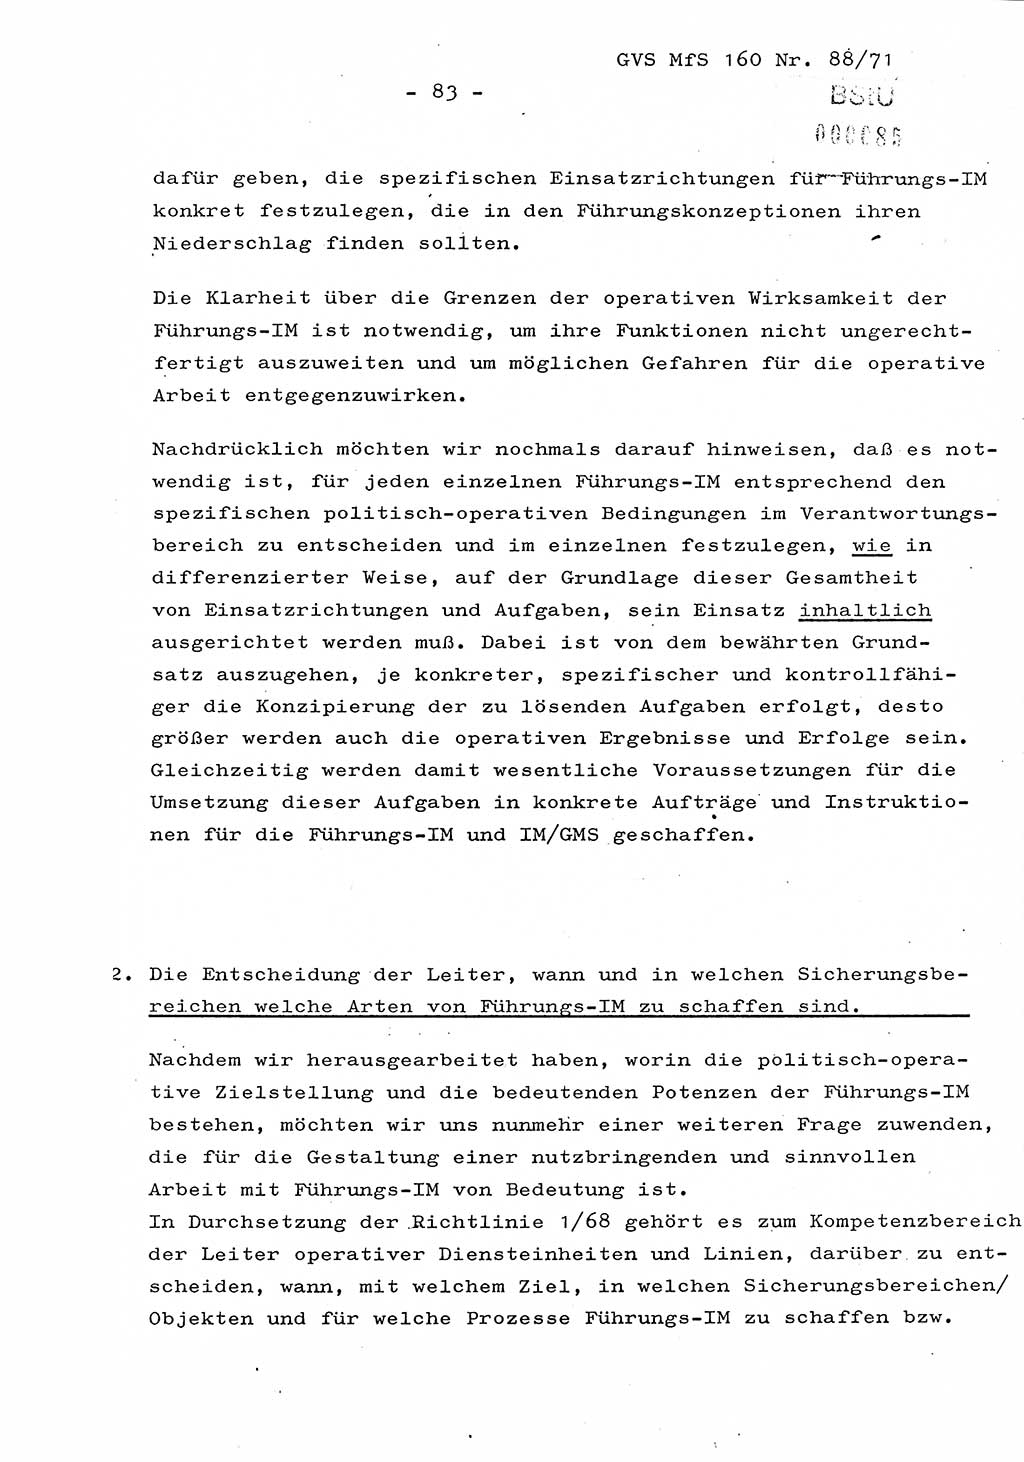 Dissertation Oberstleutnant Josef Schwarz (BV Schwerin), Major Fritz Amm (JHS), Hauptmann Peter Gräßler (JHS), Ministerium für Staatssicherheit (MfS) [Deutsche Demokratische Republik (DDR)], Juristische Hochschule (JHS), Geheime Verschlußsache (GVS) 160-88/71, Potsdam 1972, Seite 83 (Diss. MfS DDR JHS GVS 160-88/71 1972, S. 83)